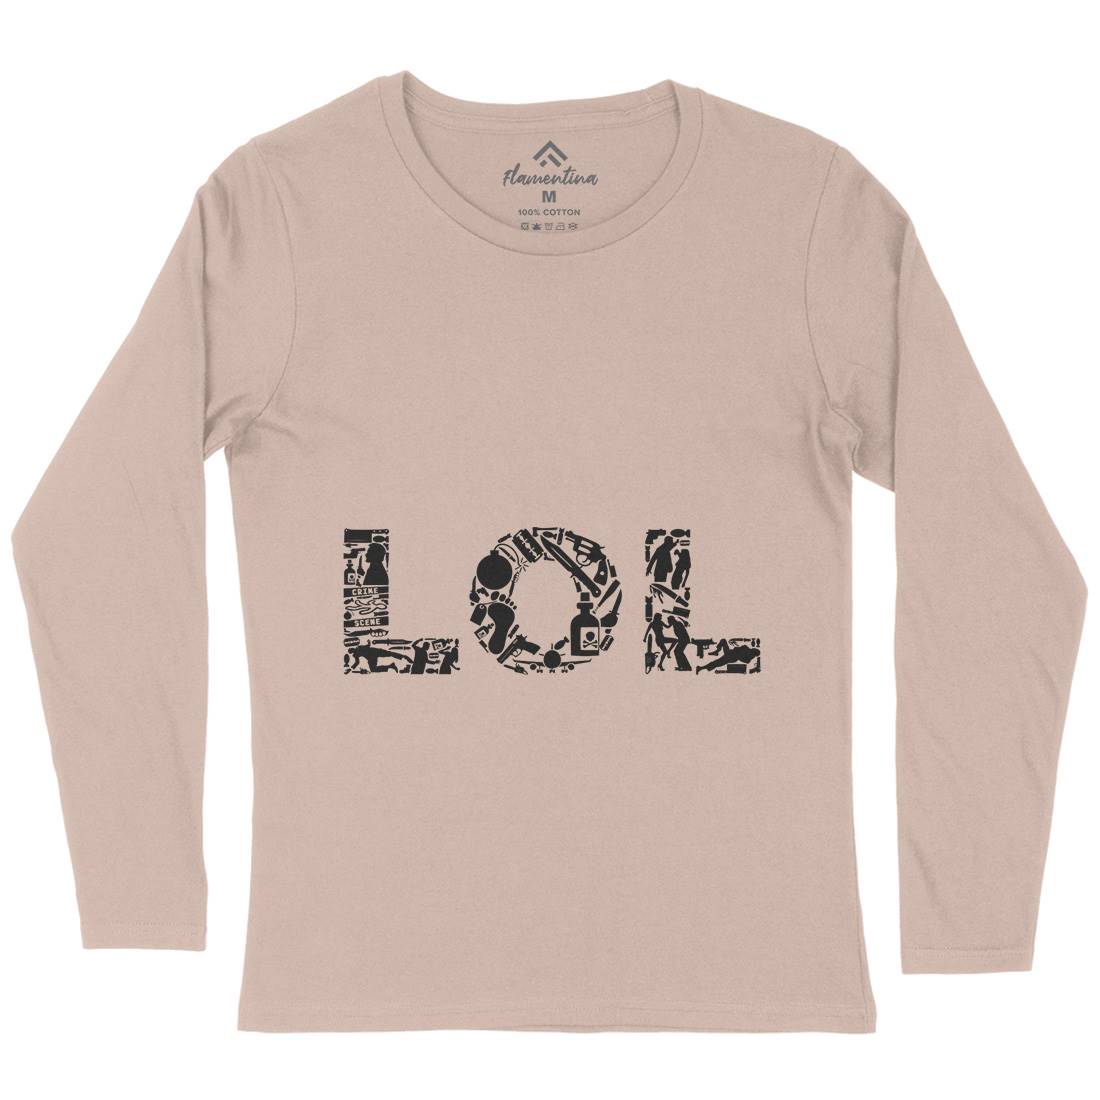 Lol Womens Long Sleeve T-Shirt Retro B060